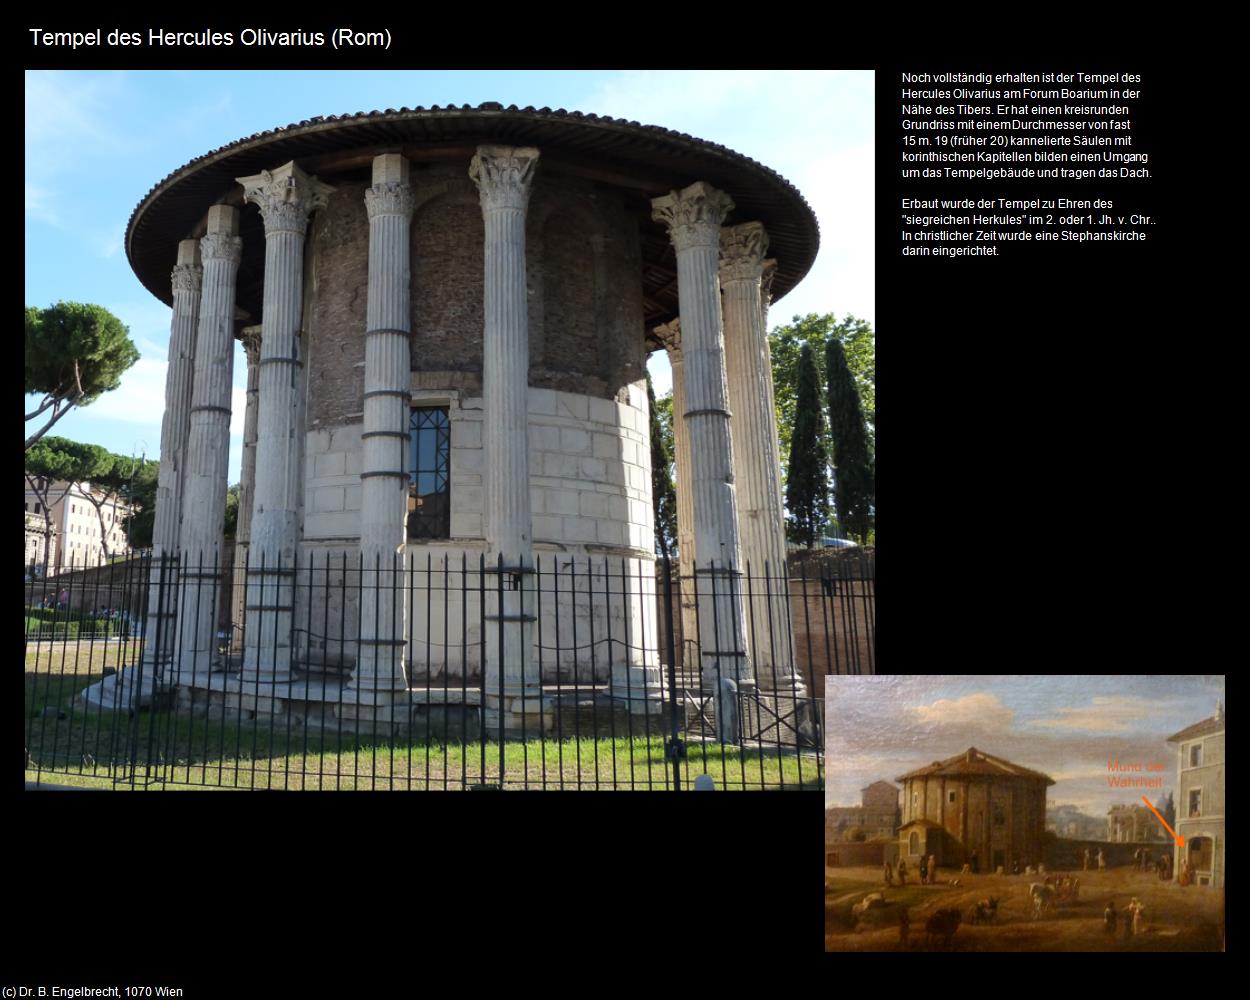 Tempel des Hercules Olivarius  (Rom-04-Forum Romanum und Umgebung) in ROM